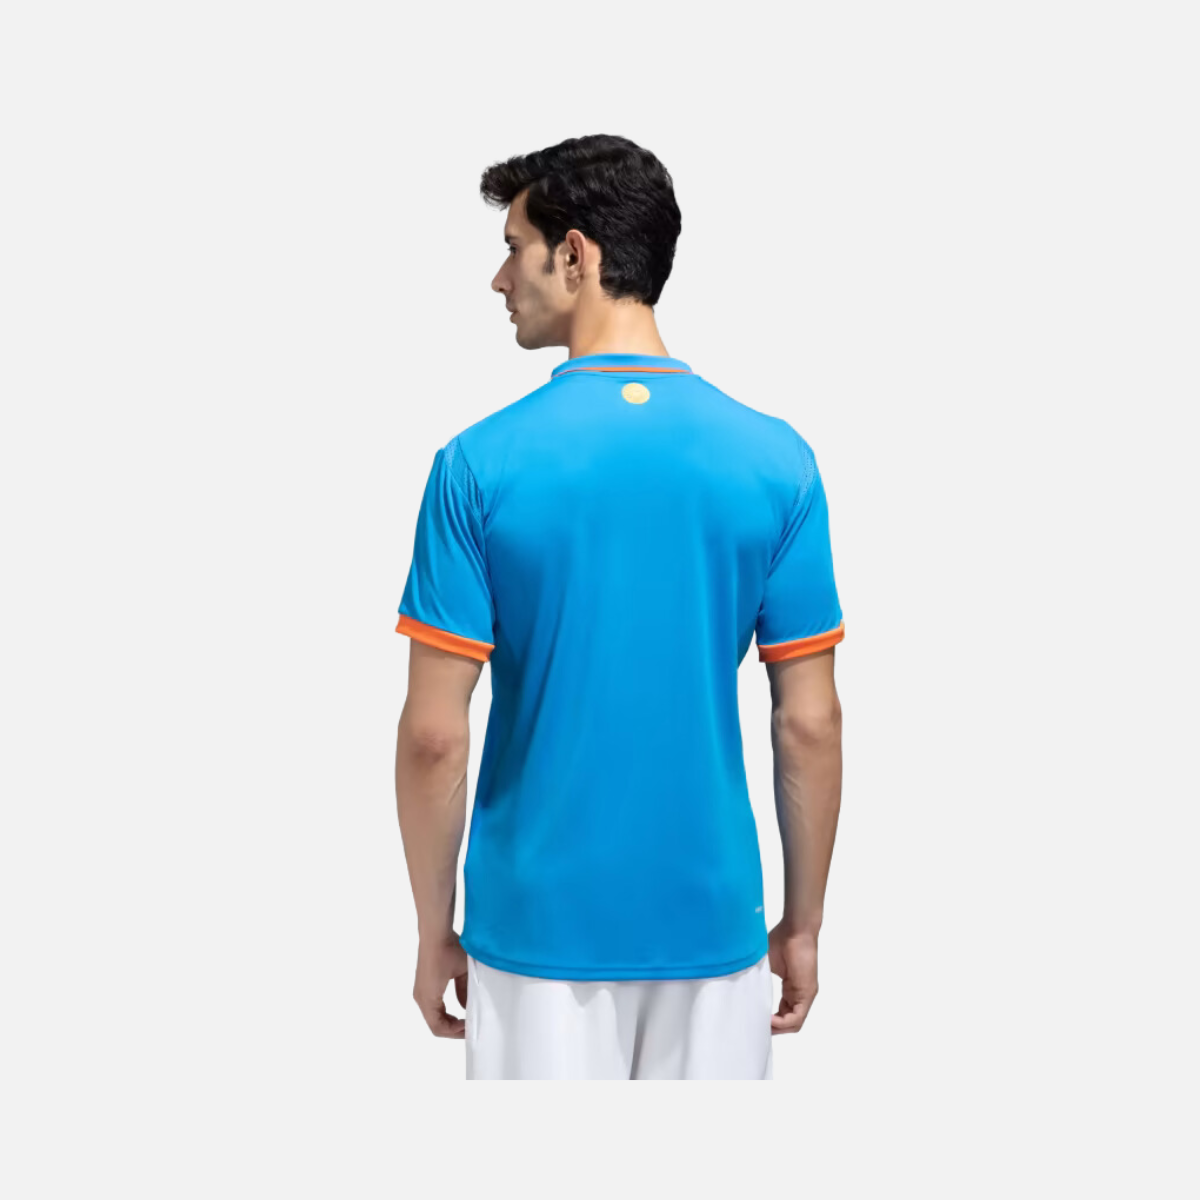 Adidas India Cricket Odi Replica Men's Jersey -Bright Blue